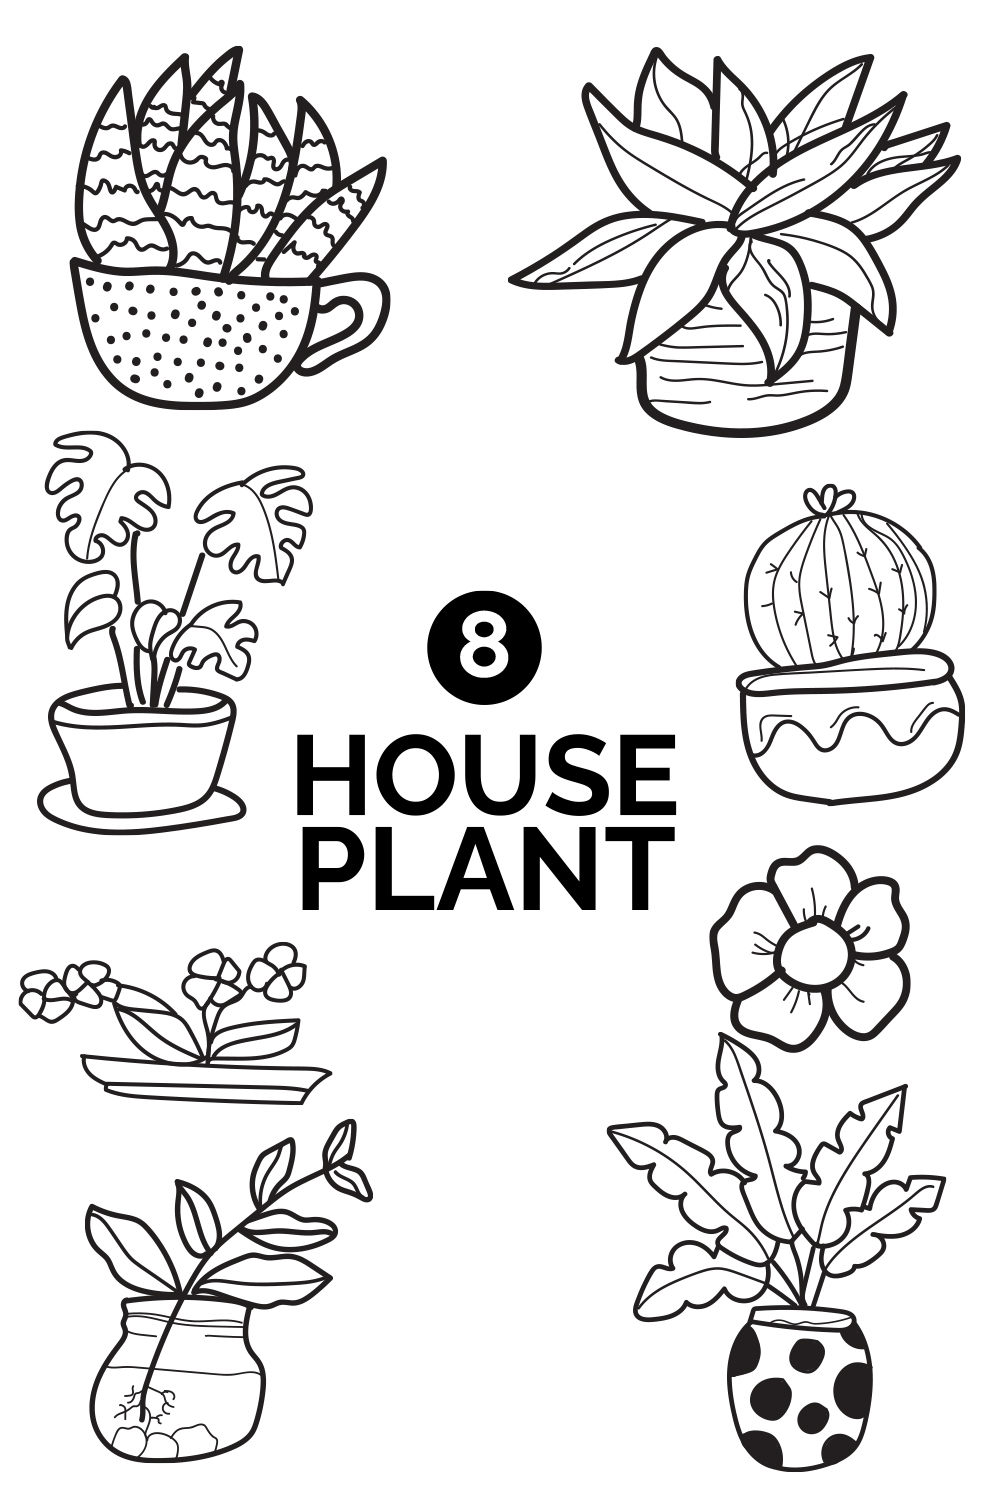 8 house plants doodle illustration pinterest preview image.